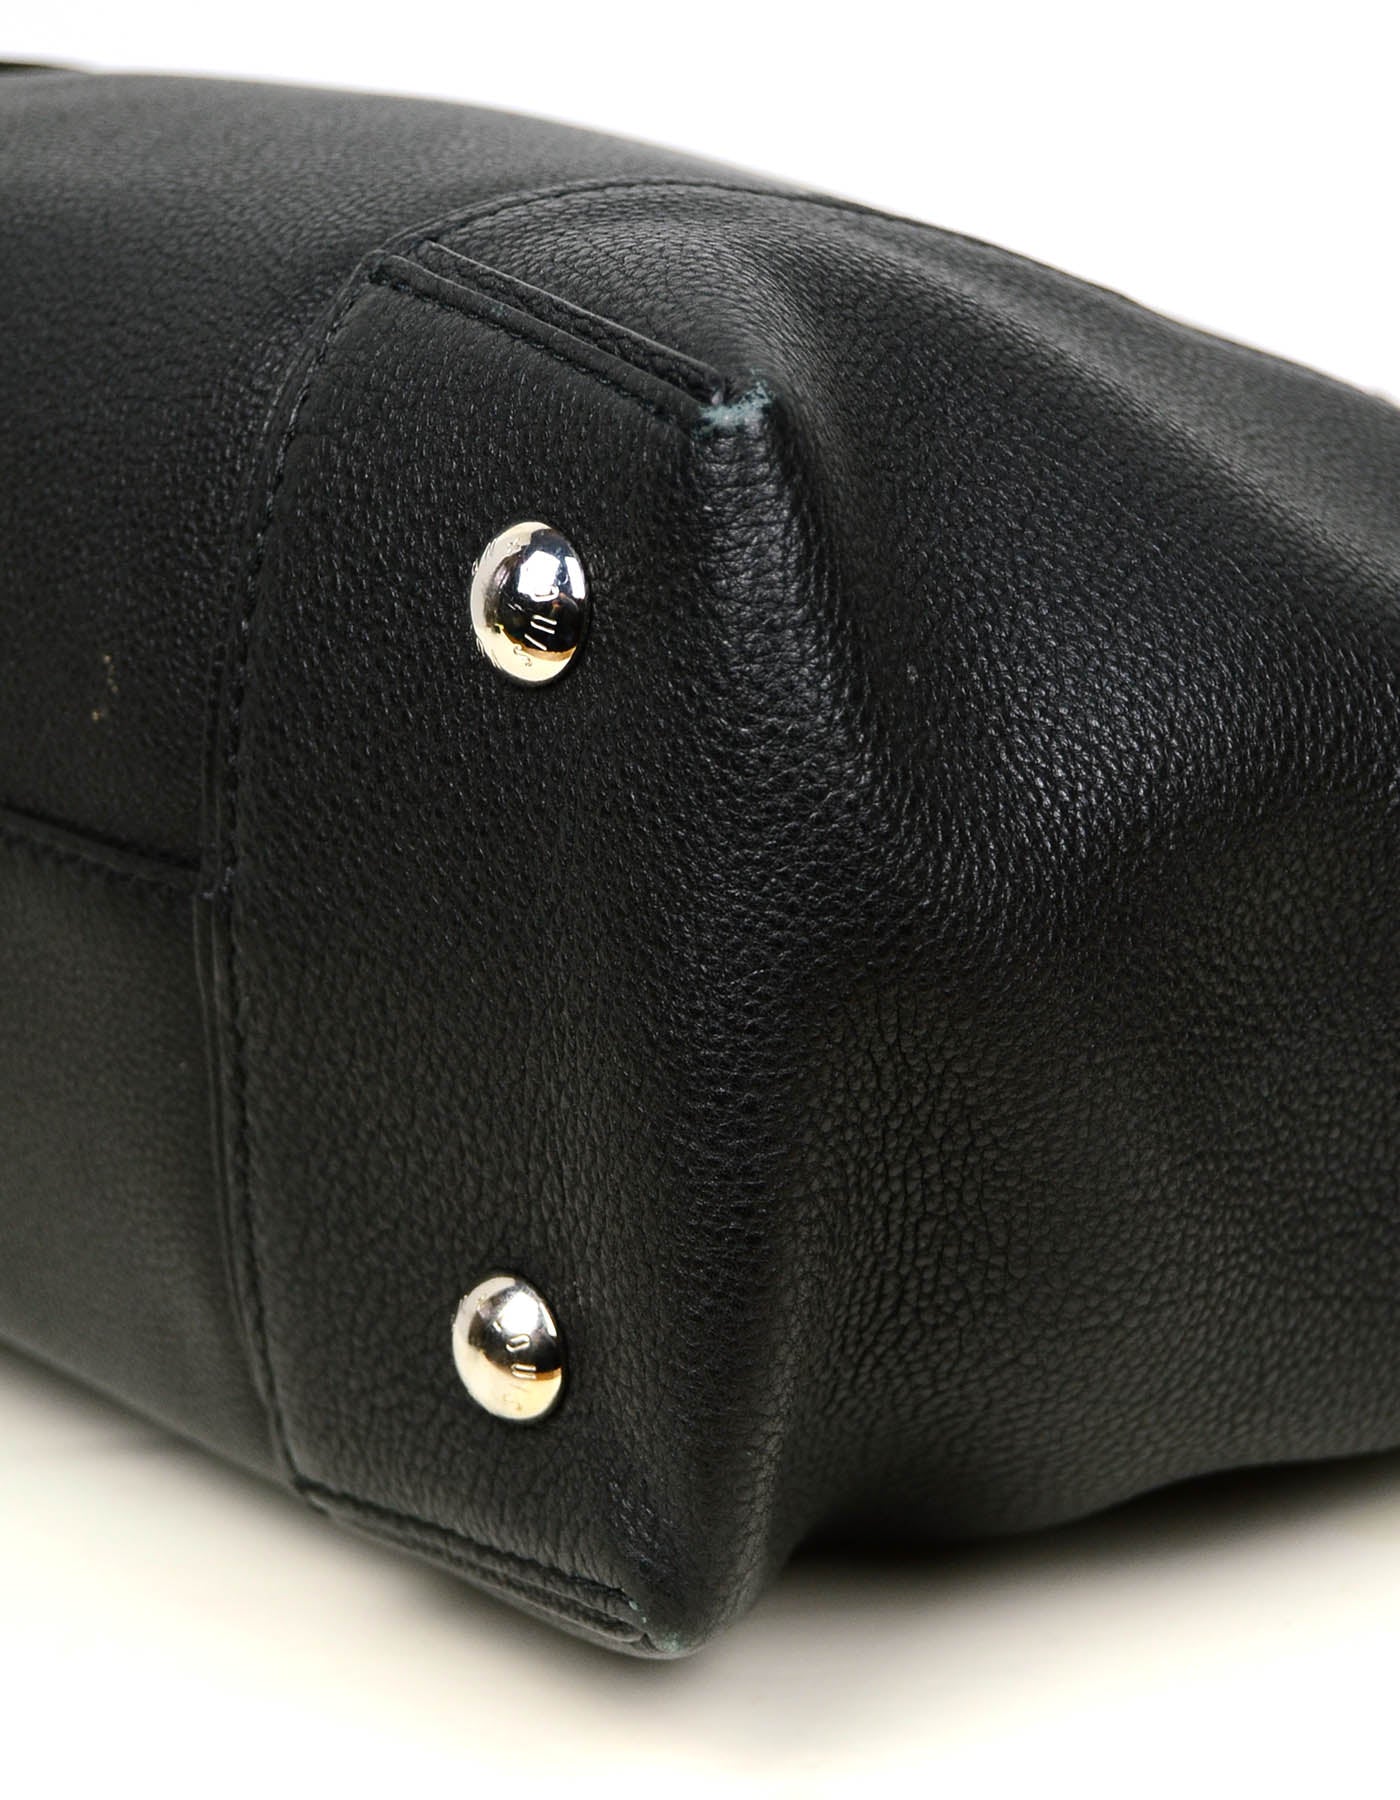 Louis Vuitton Black Veau Cachemire Calfskin & Python Soft Lockit MM Bag